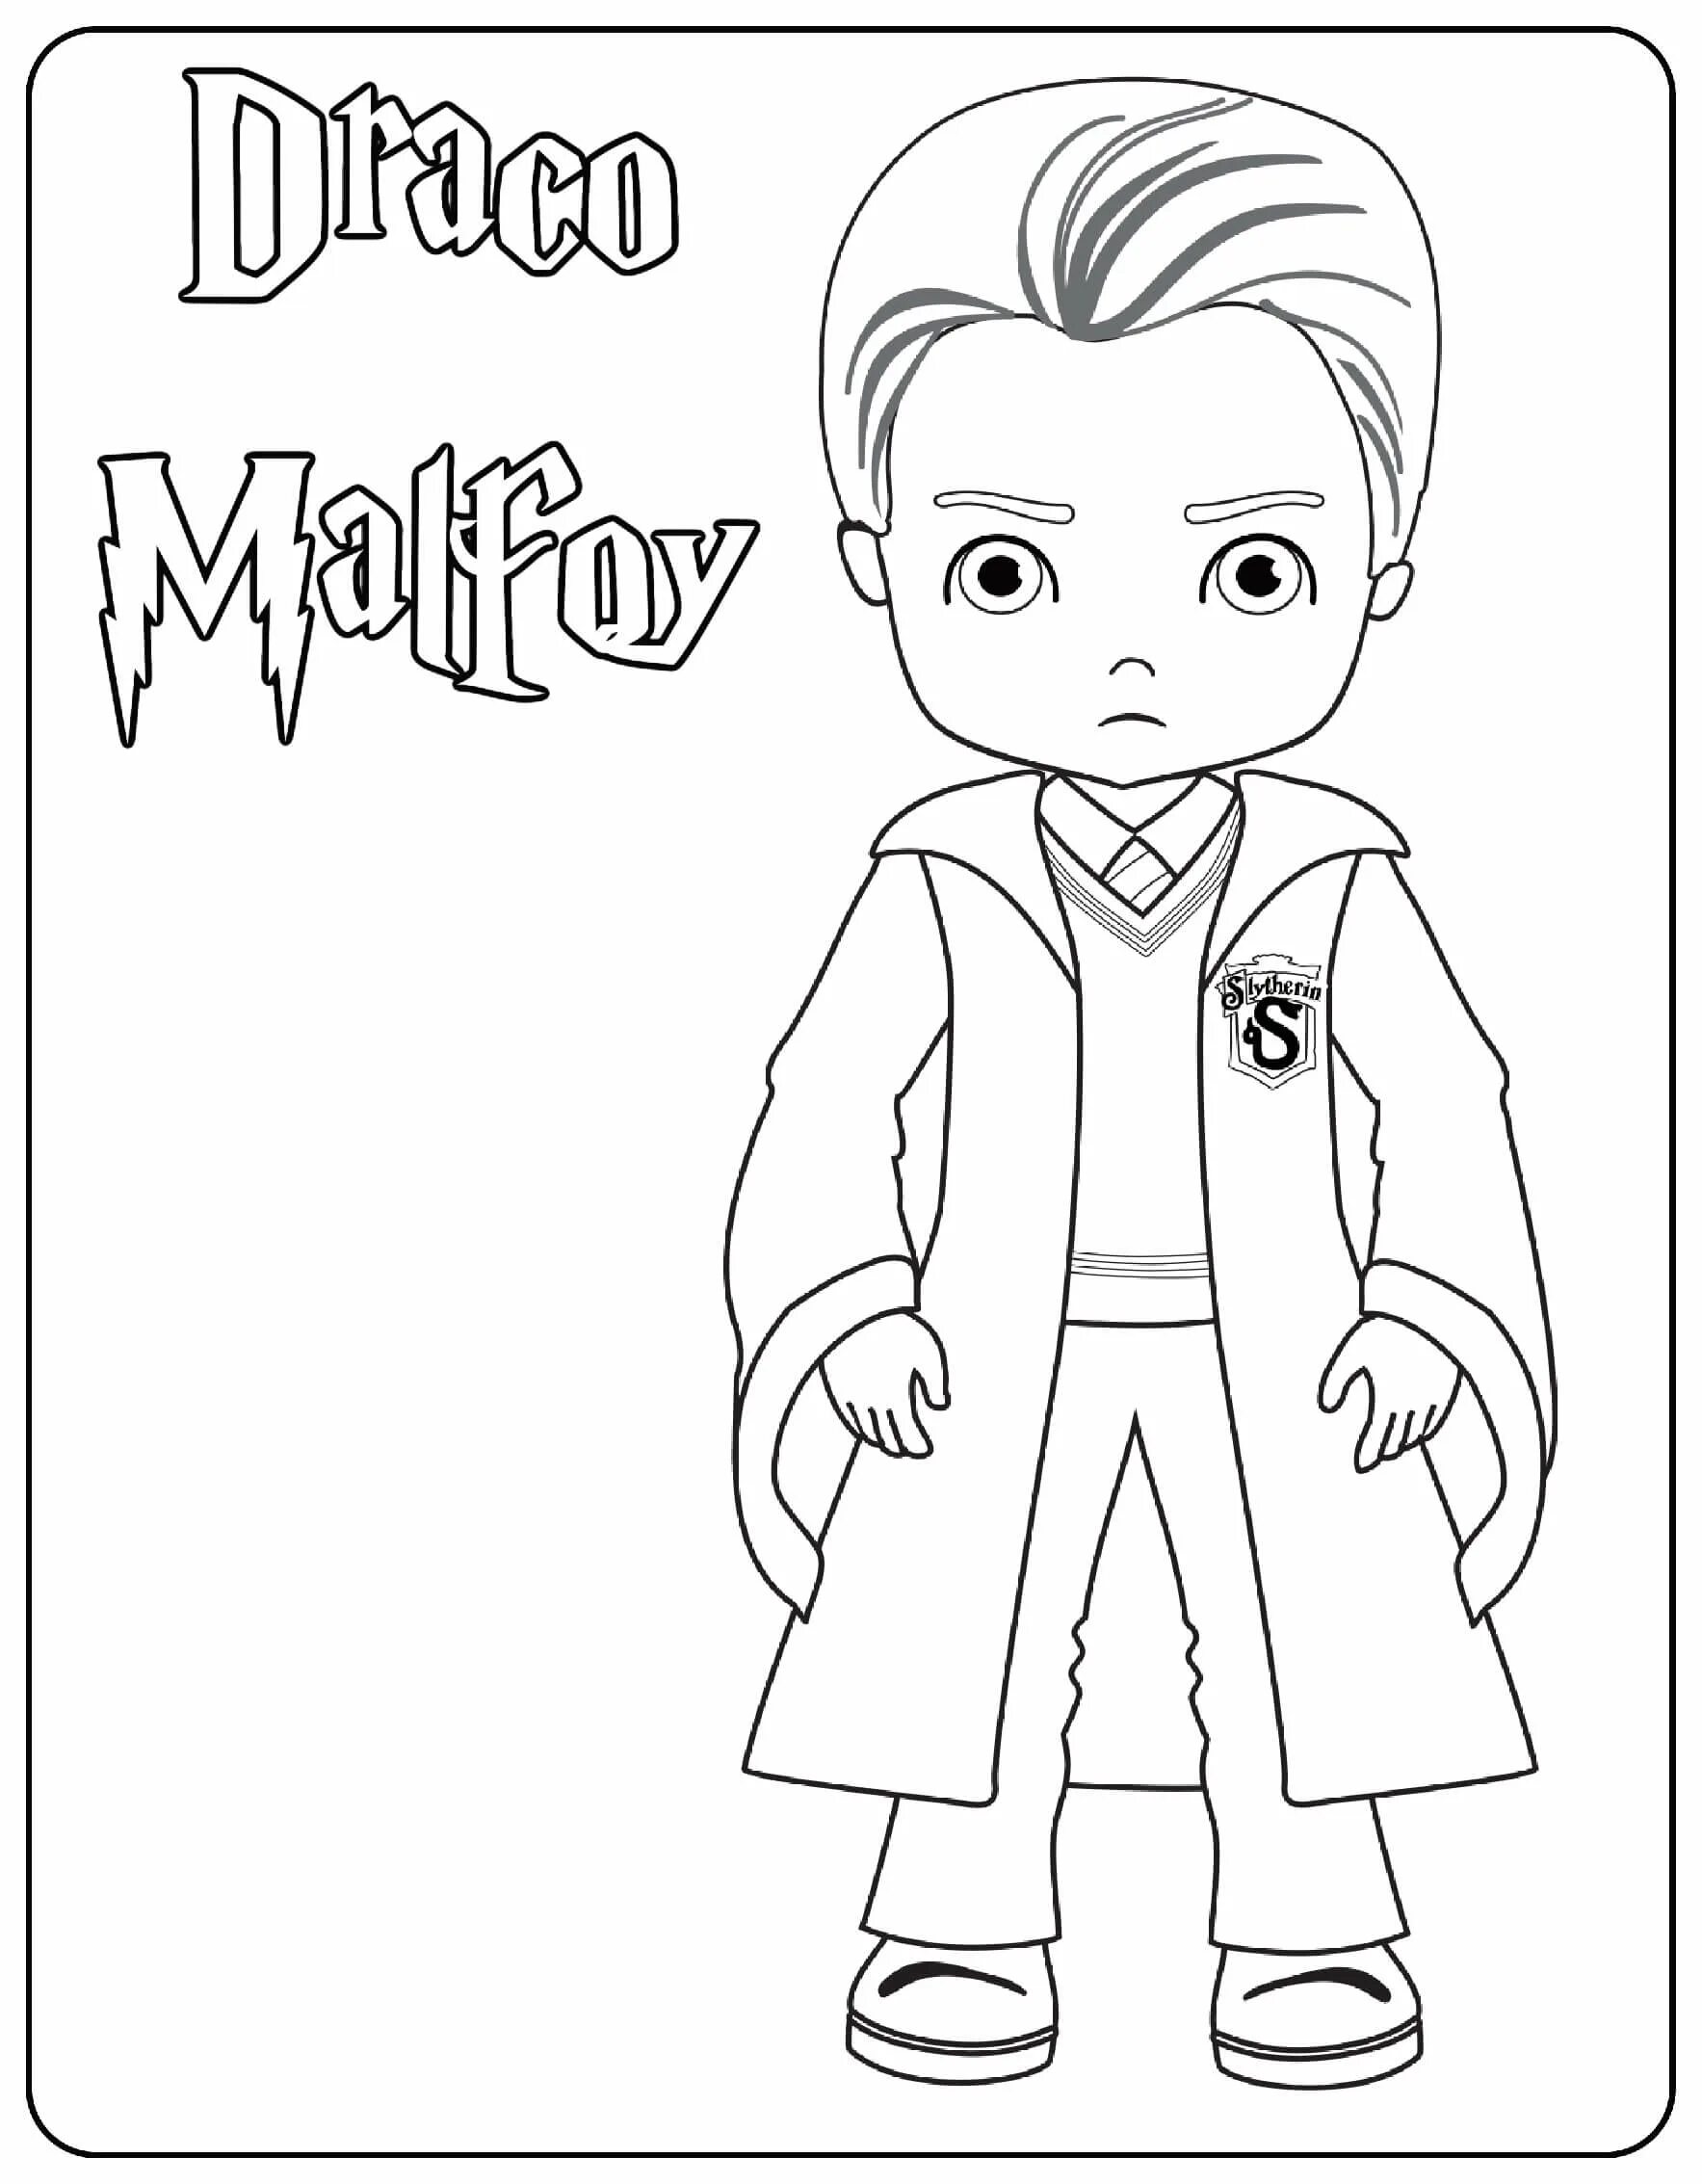 Harry potter draco malfoy #8